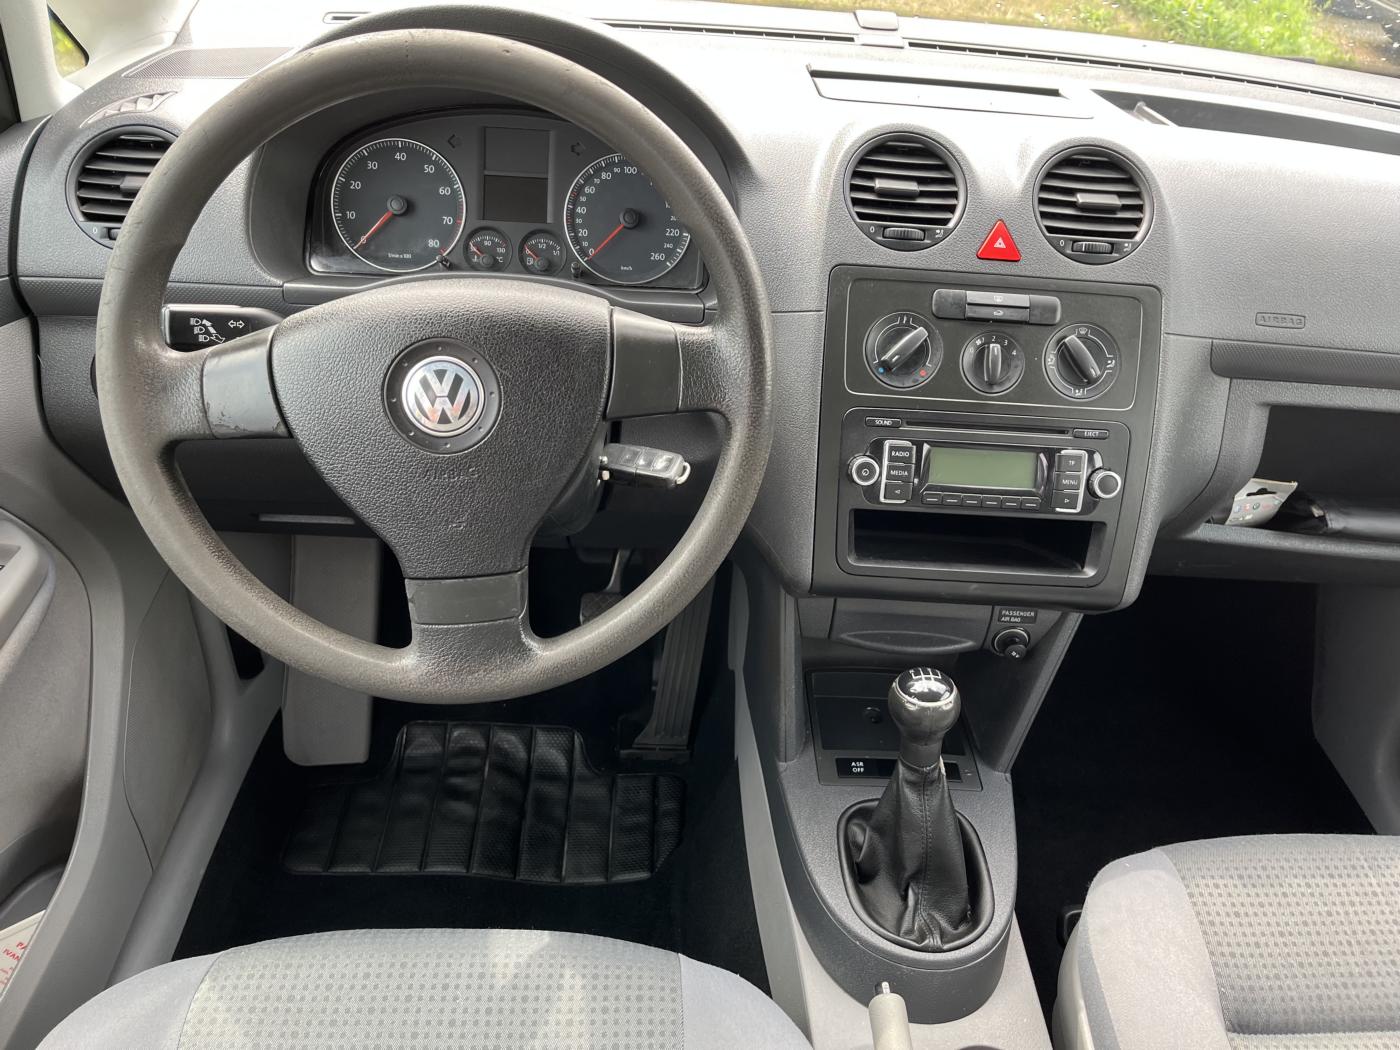 Volkswagen Caddy 1.4i